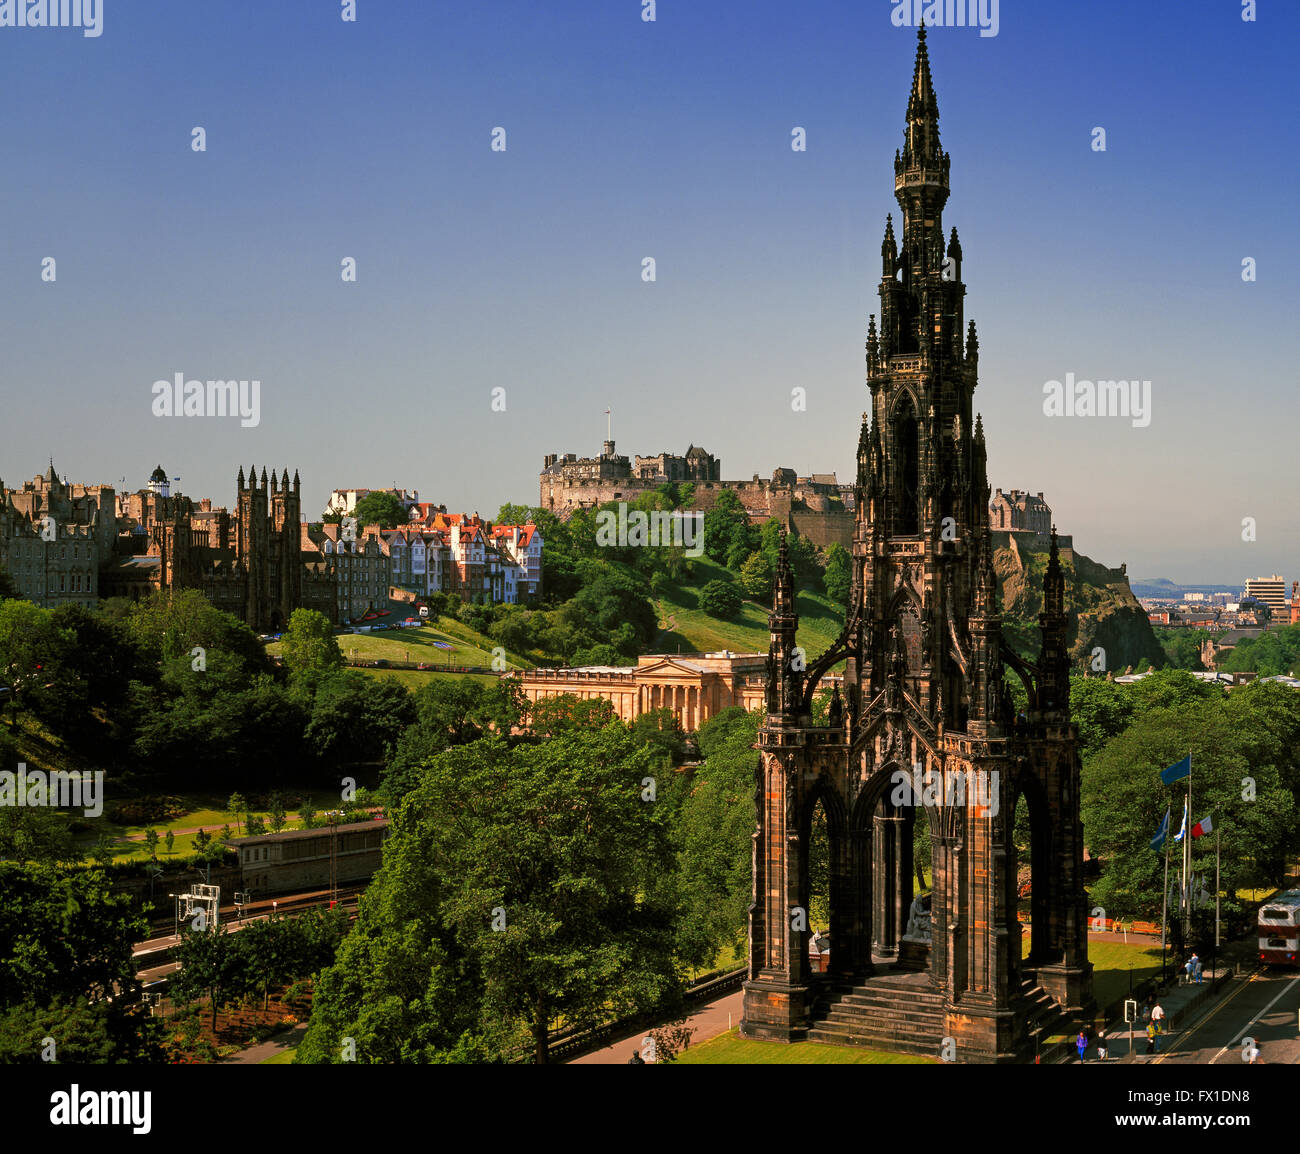 Le Scott Monument et château, Princes Street, Edinburgh, Ecosse, Royaume-Uni Banque D'Images